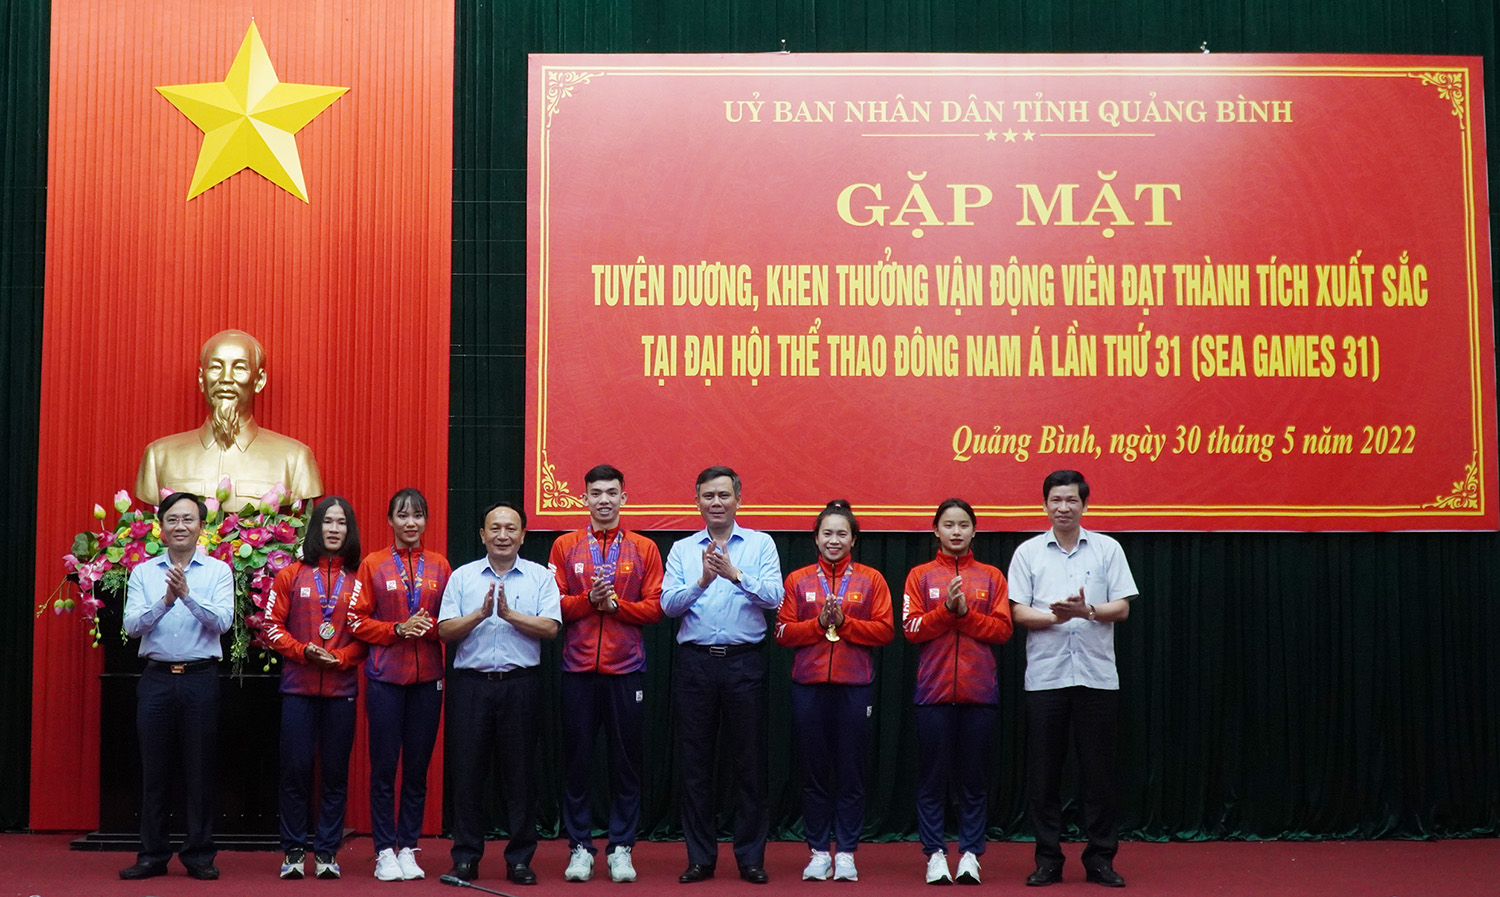 Các đồng chí lãnh đạo tỉnh chúc mừng các VĐV đoàn Quảng Bình hoàn thành xuất sắc nhiệm vụ tại đấu trường SEA Games 31.